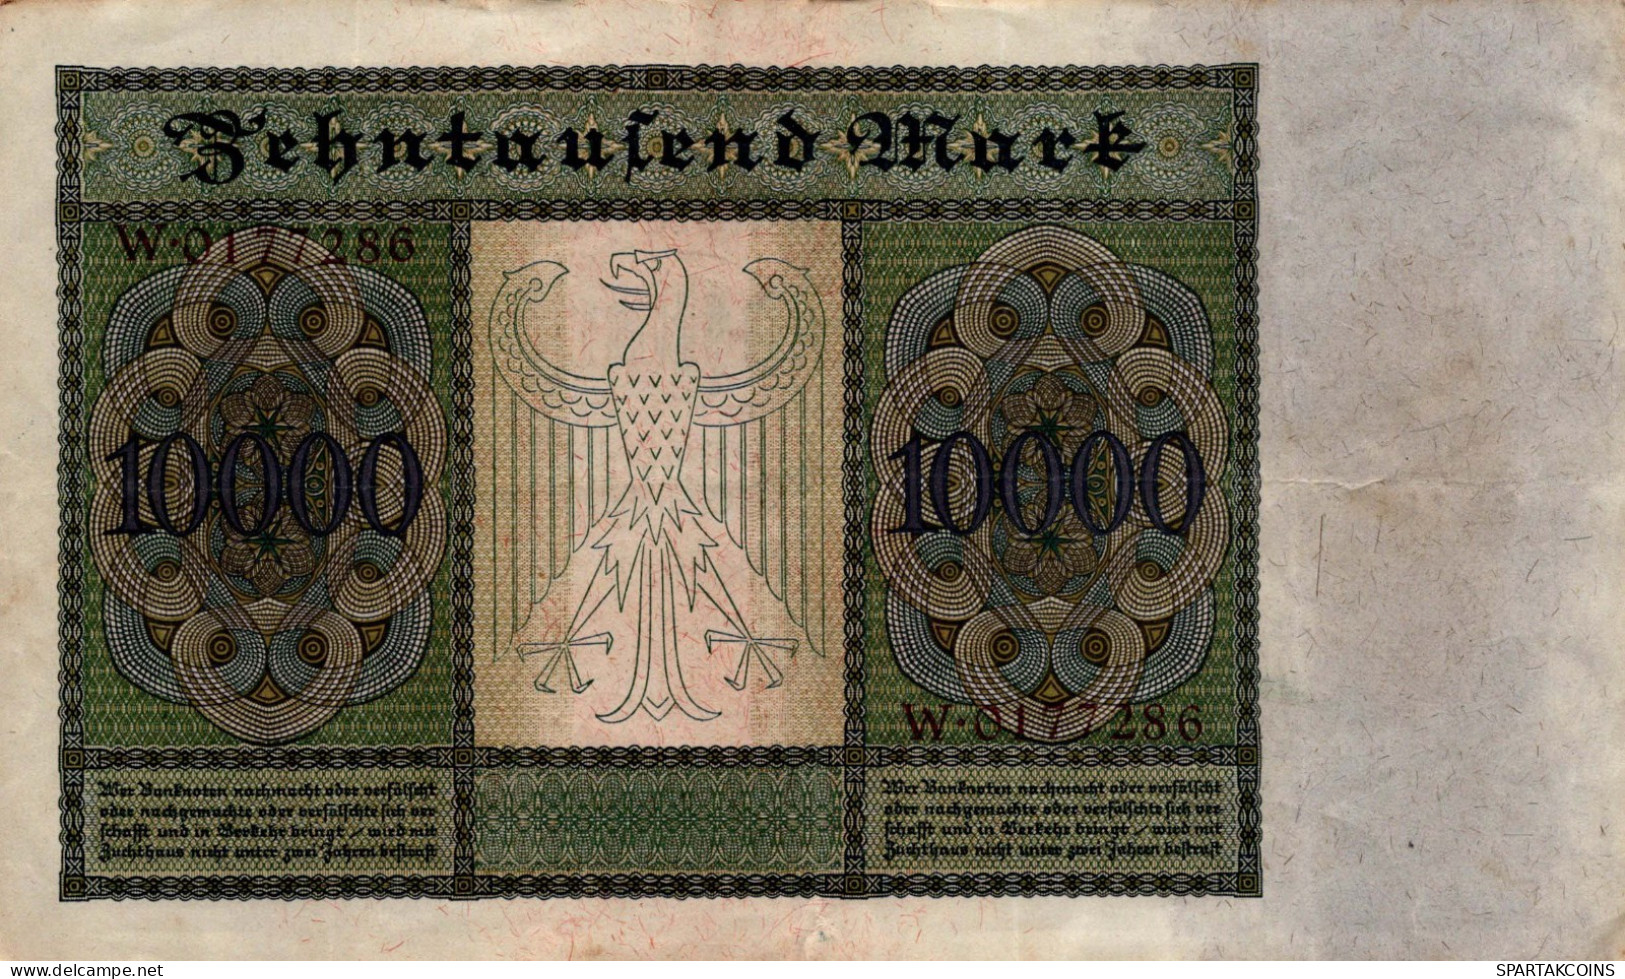 10000 MARK 1922 Stadt BERLIN DEUTSCHLAND Papiergeld Banknote #PL329 - [11] Emisiones Locales